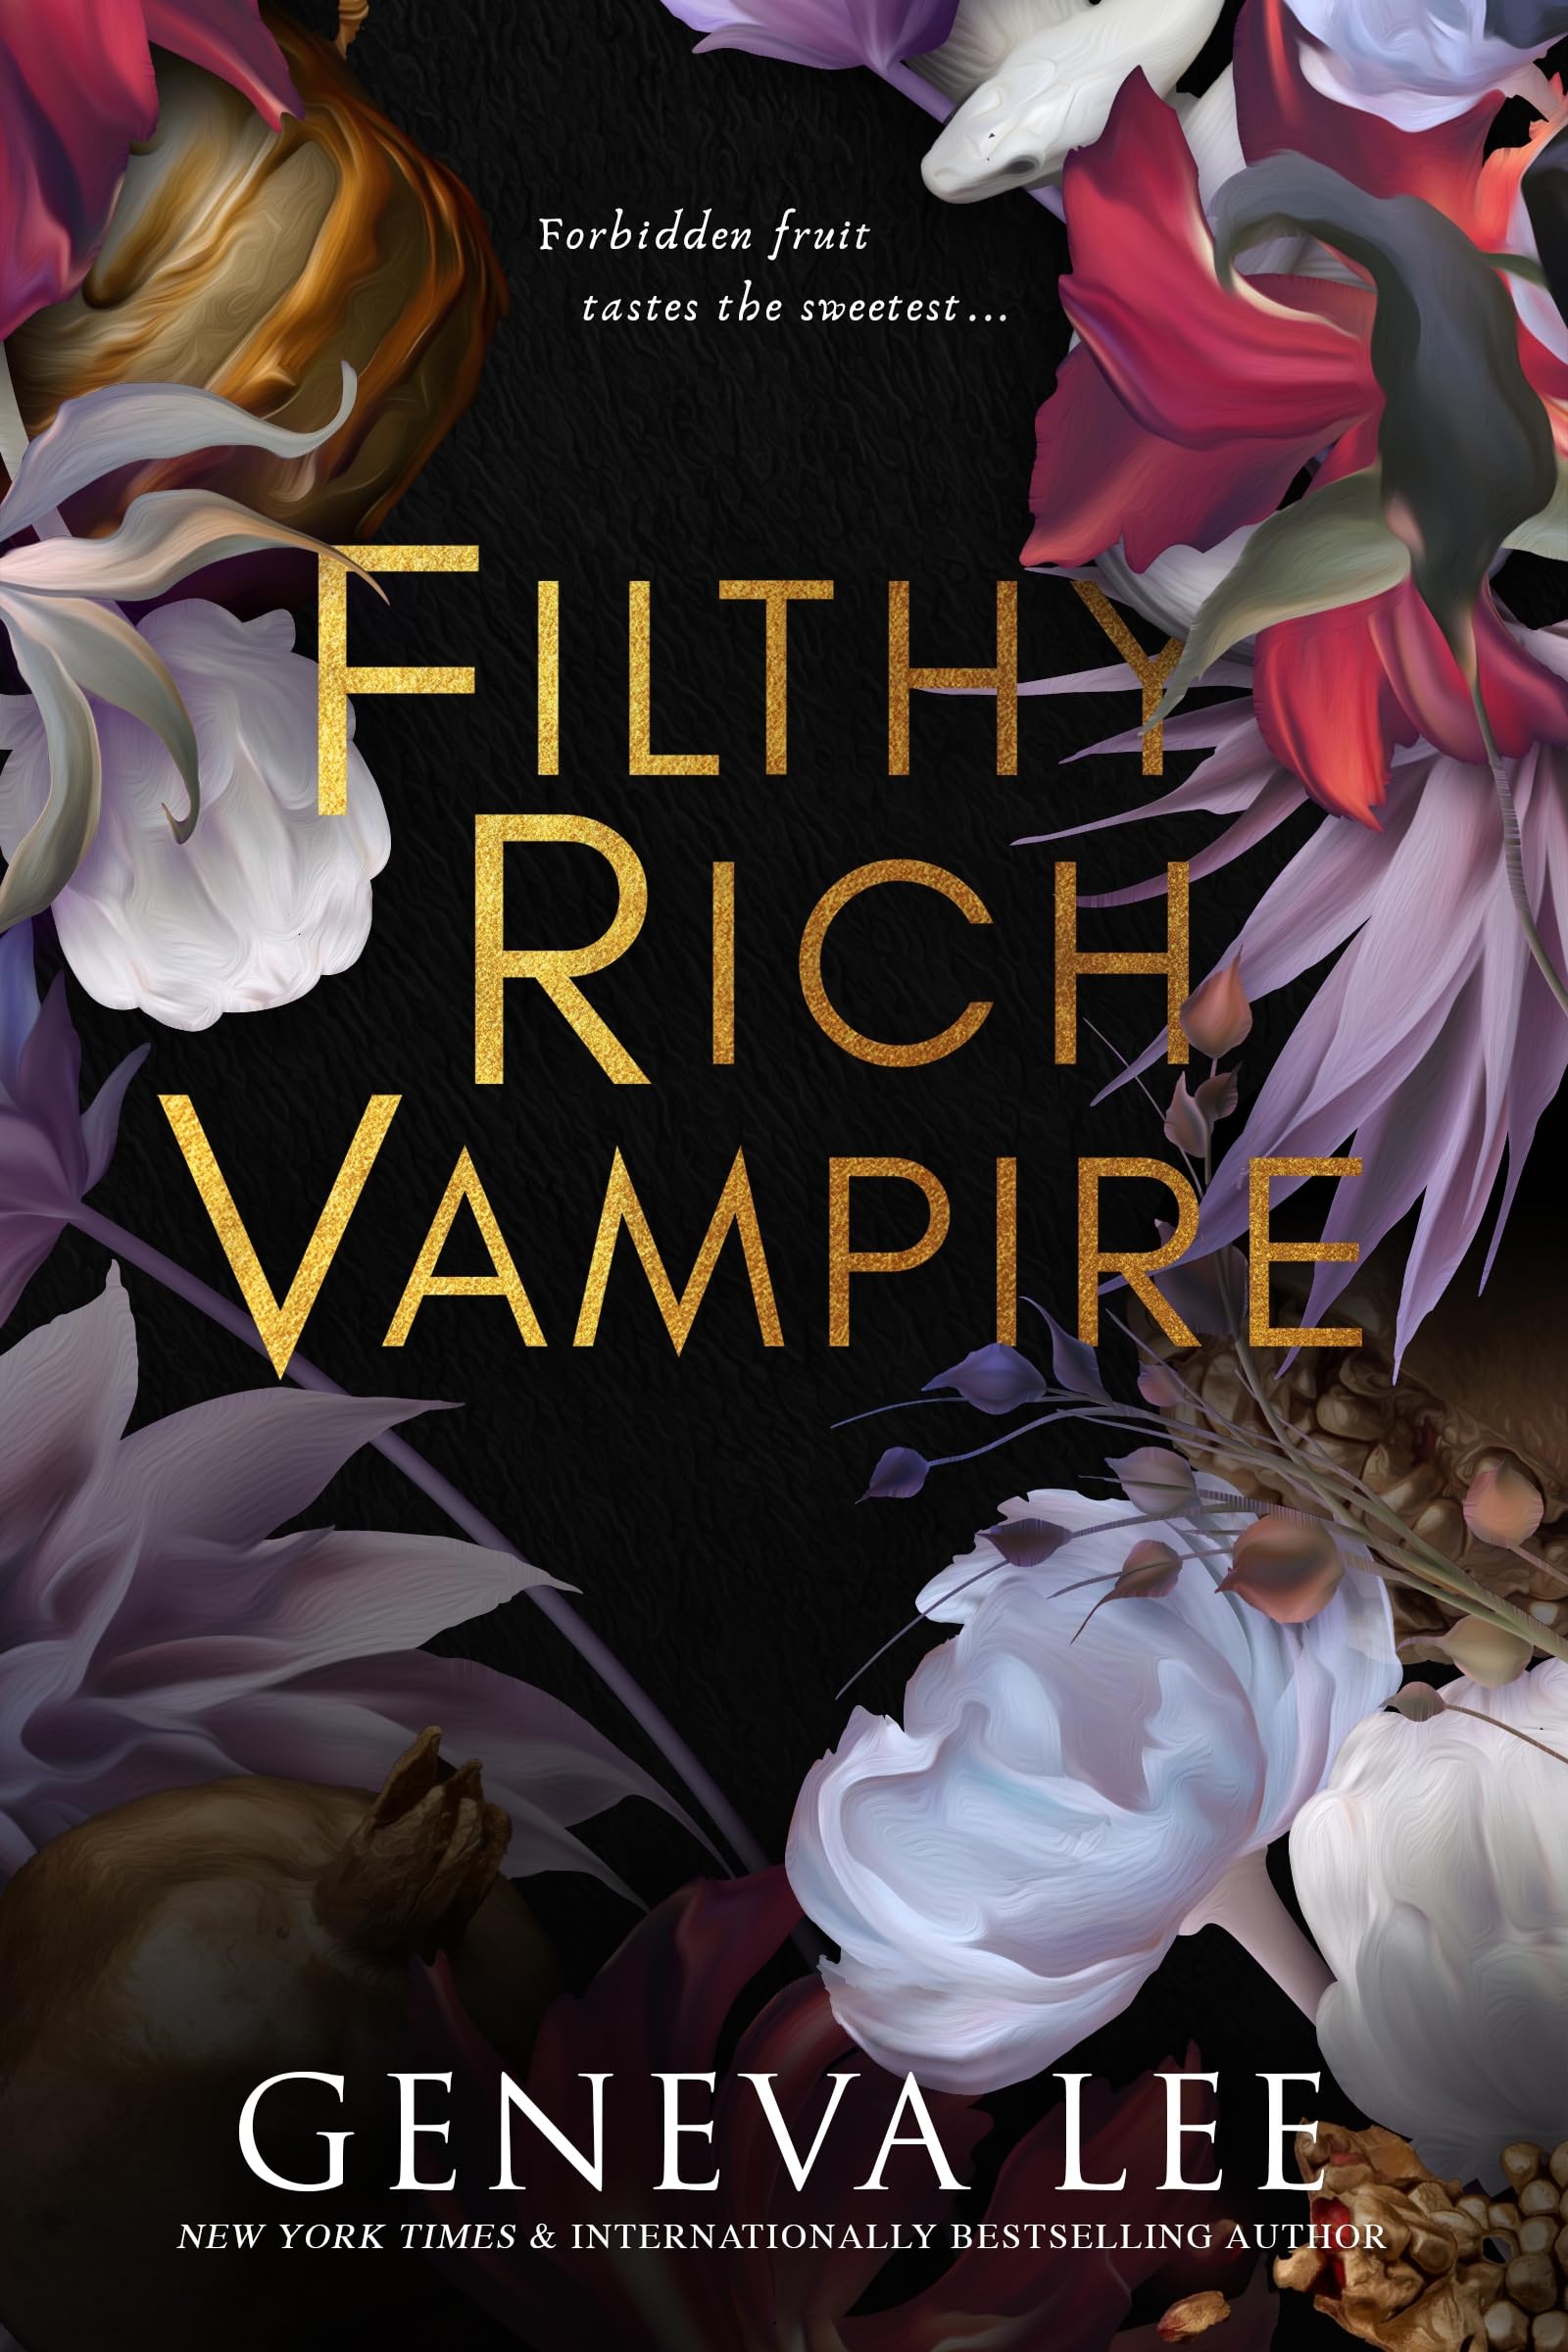 Filthy Rich Vampire (Filthy Rich Vampires, 1)